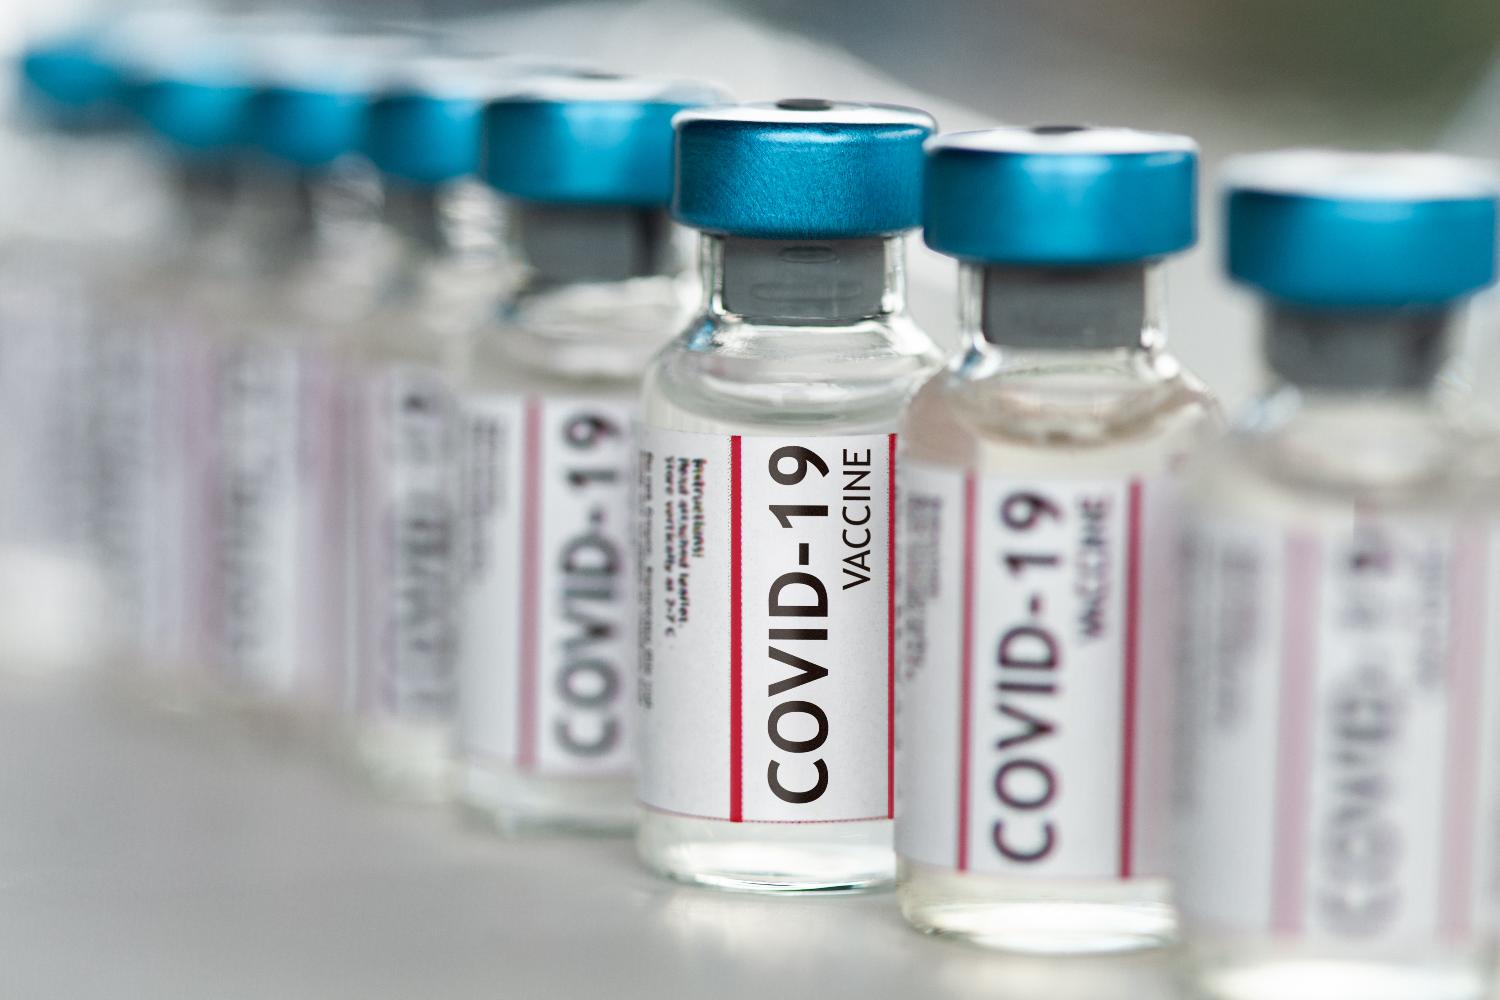 Ampoules containing vaccine against the coronavirus.